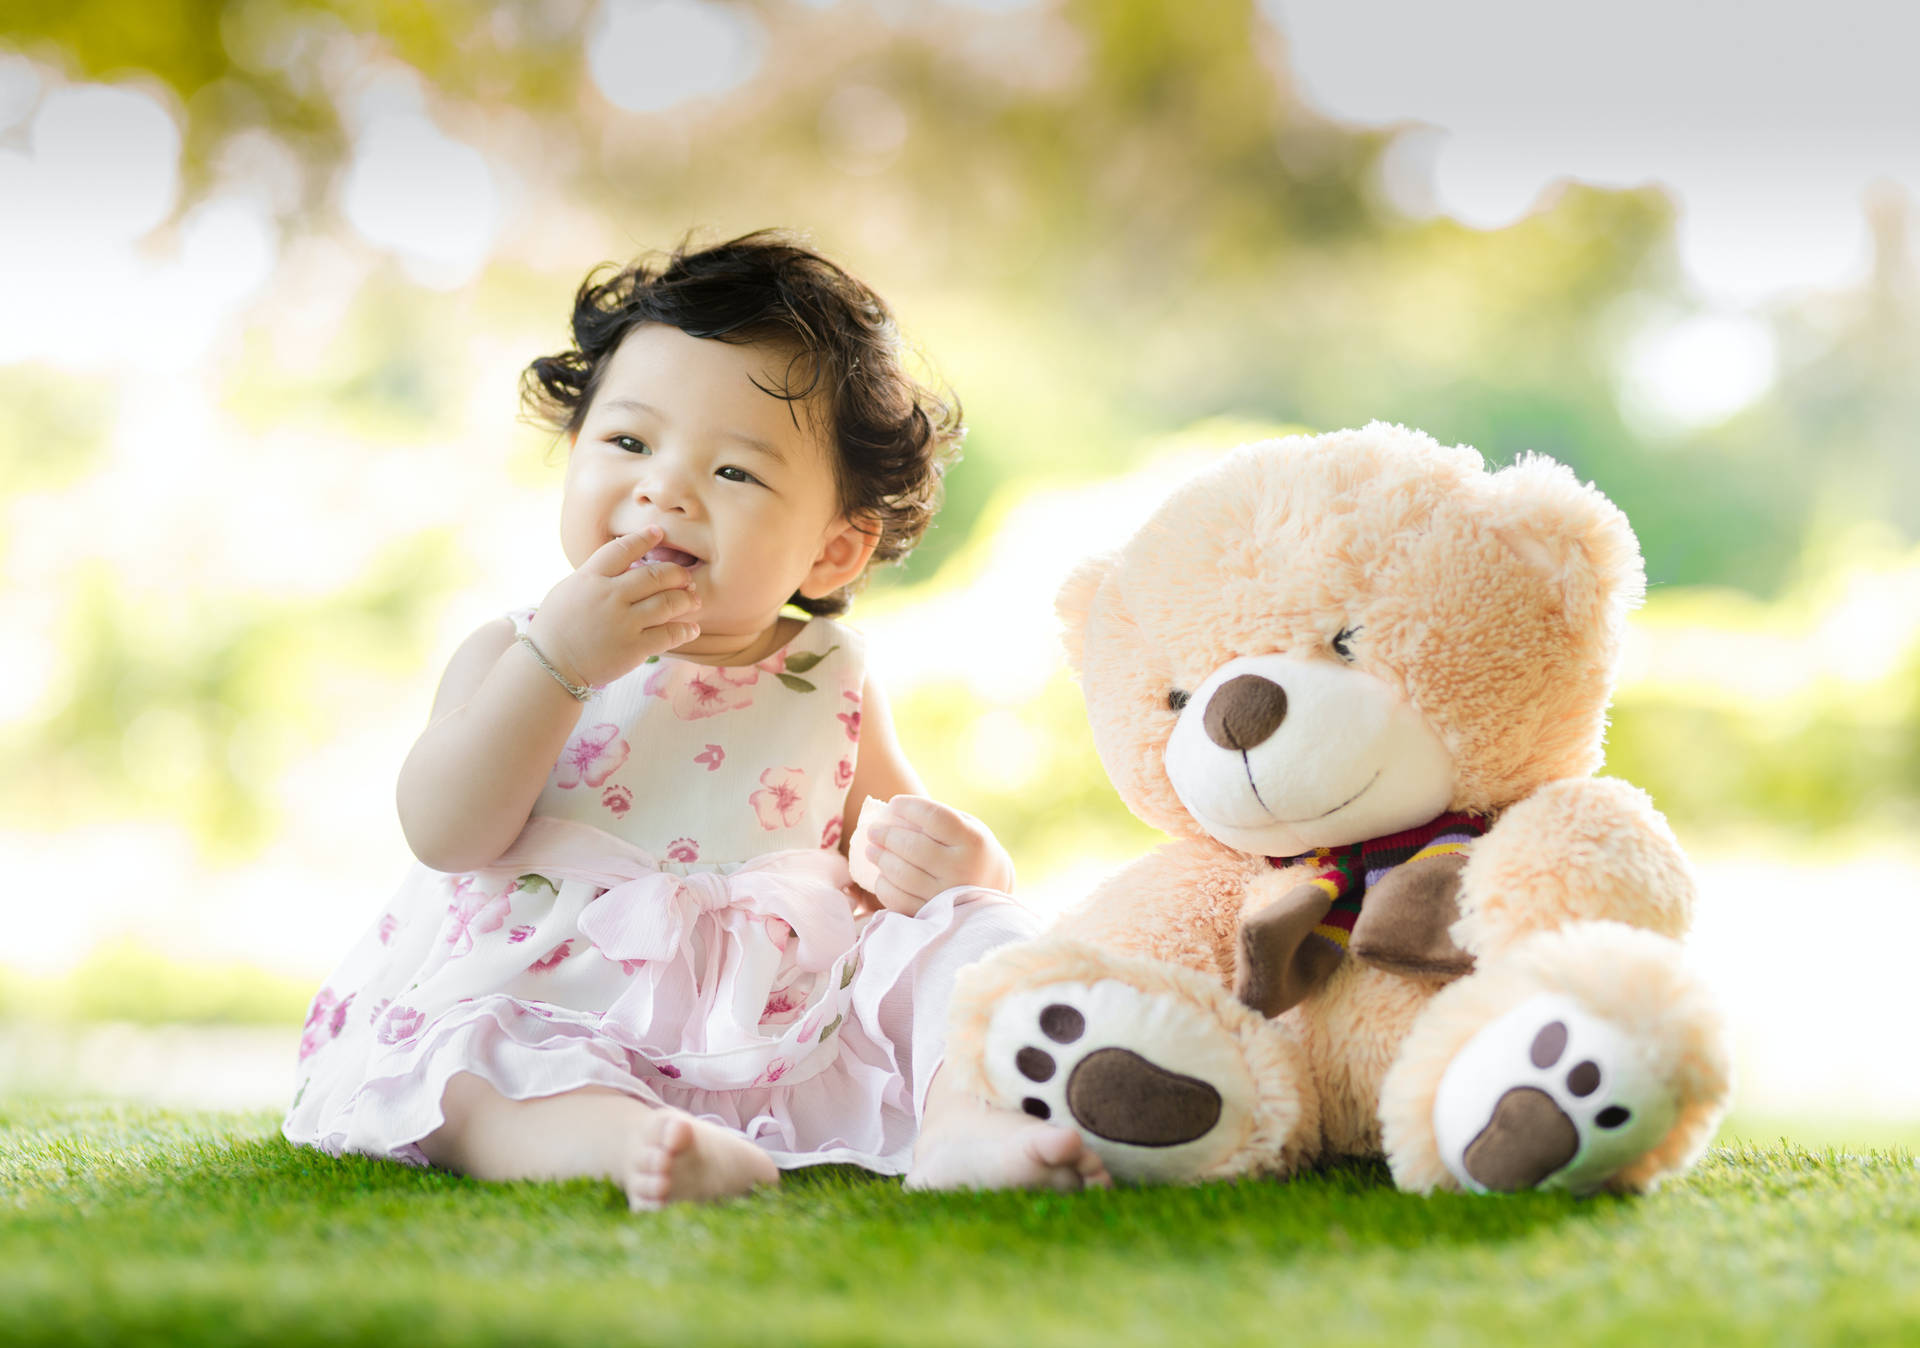 Cute Baby Girl With Teddy Bear